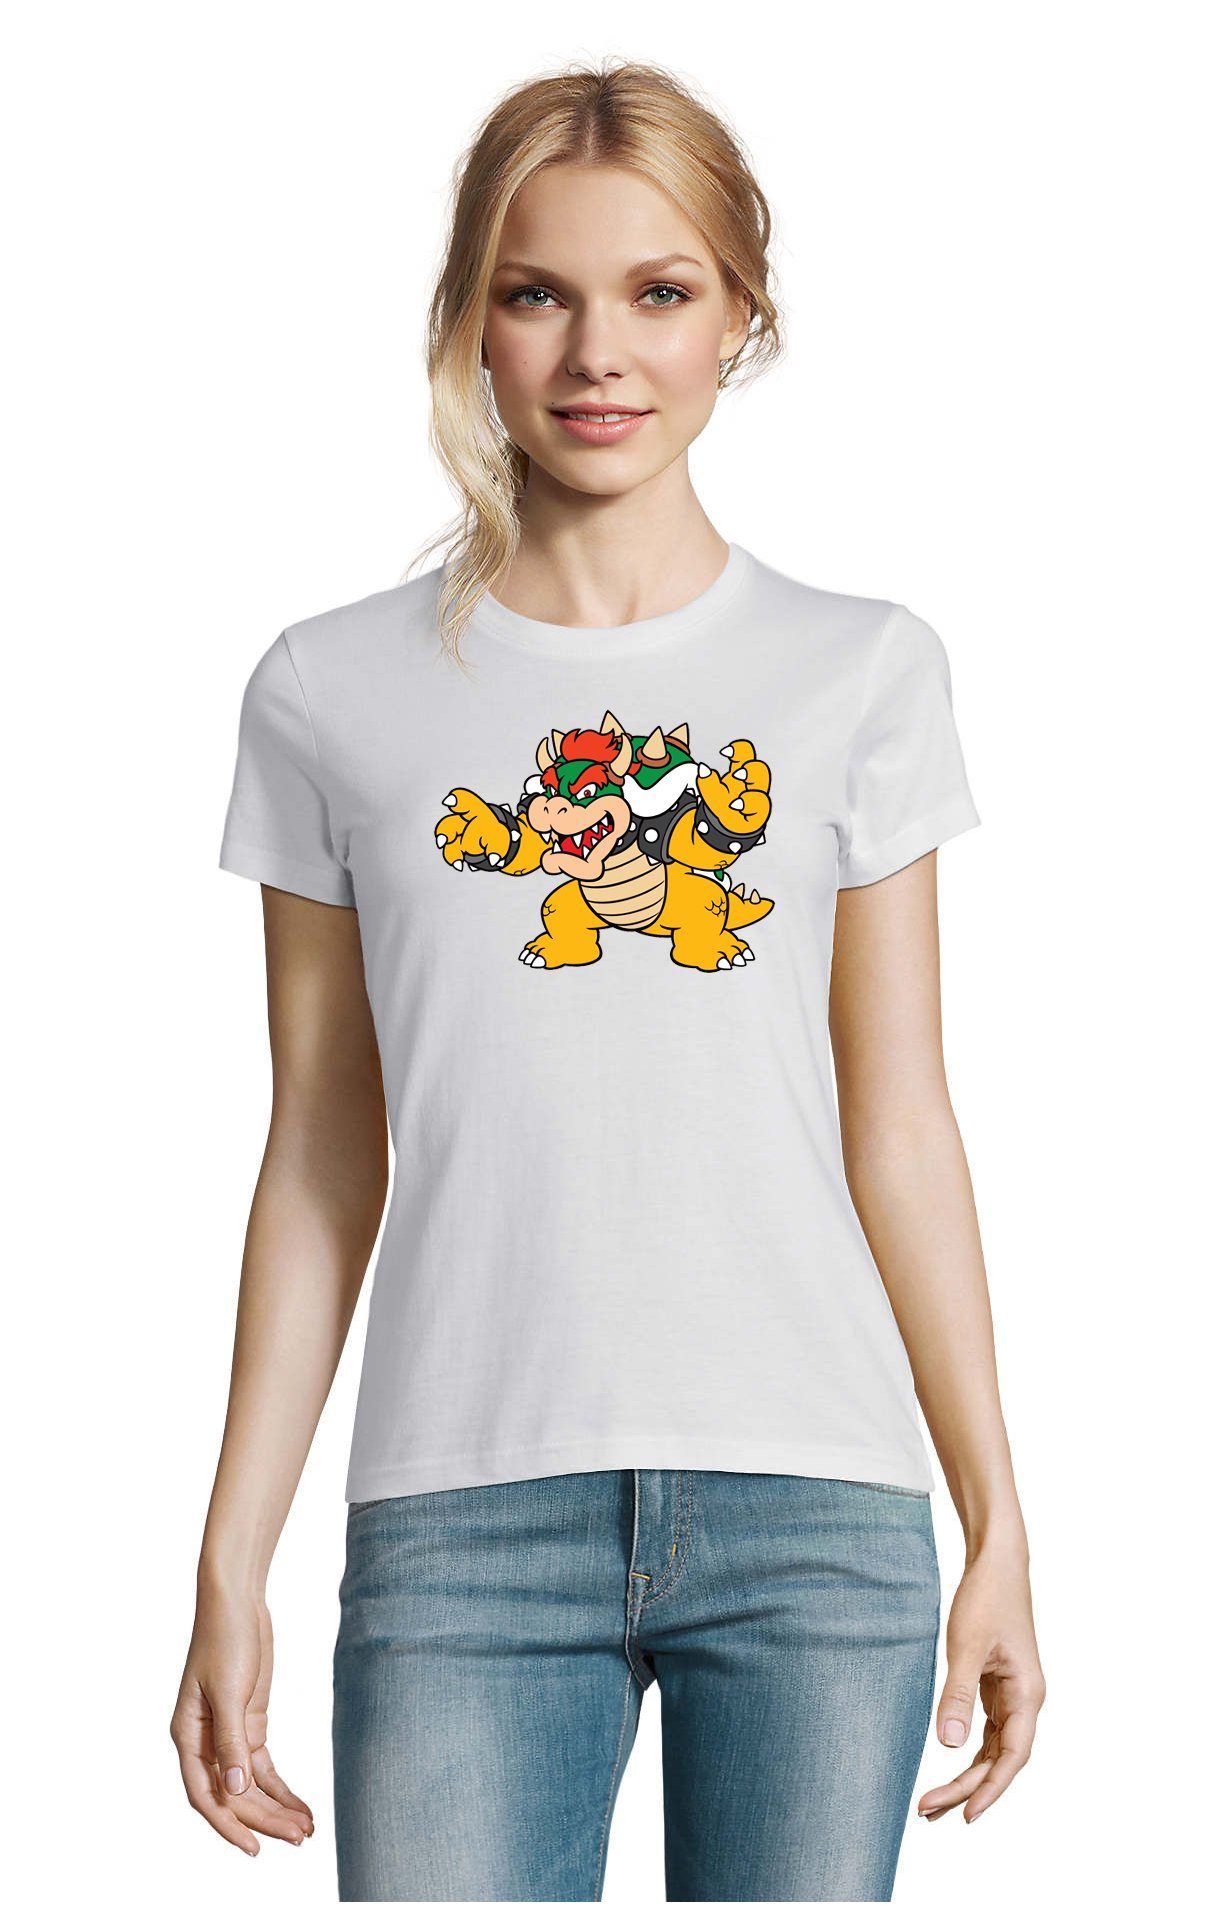 Blondie & T-Shirt Mario Konsole Gaming Yoshi Brownie Gamer Game Nintendo Damen Weiss Luigi Bowser